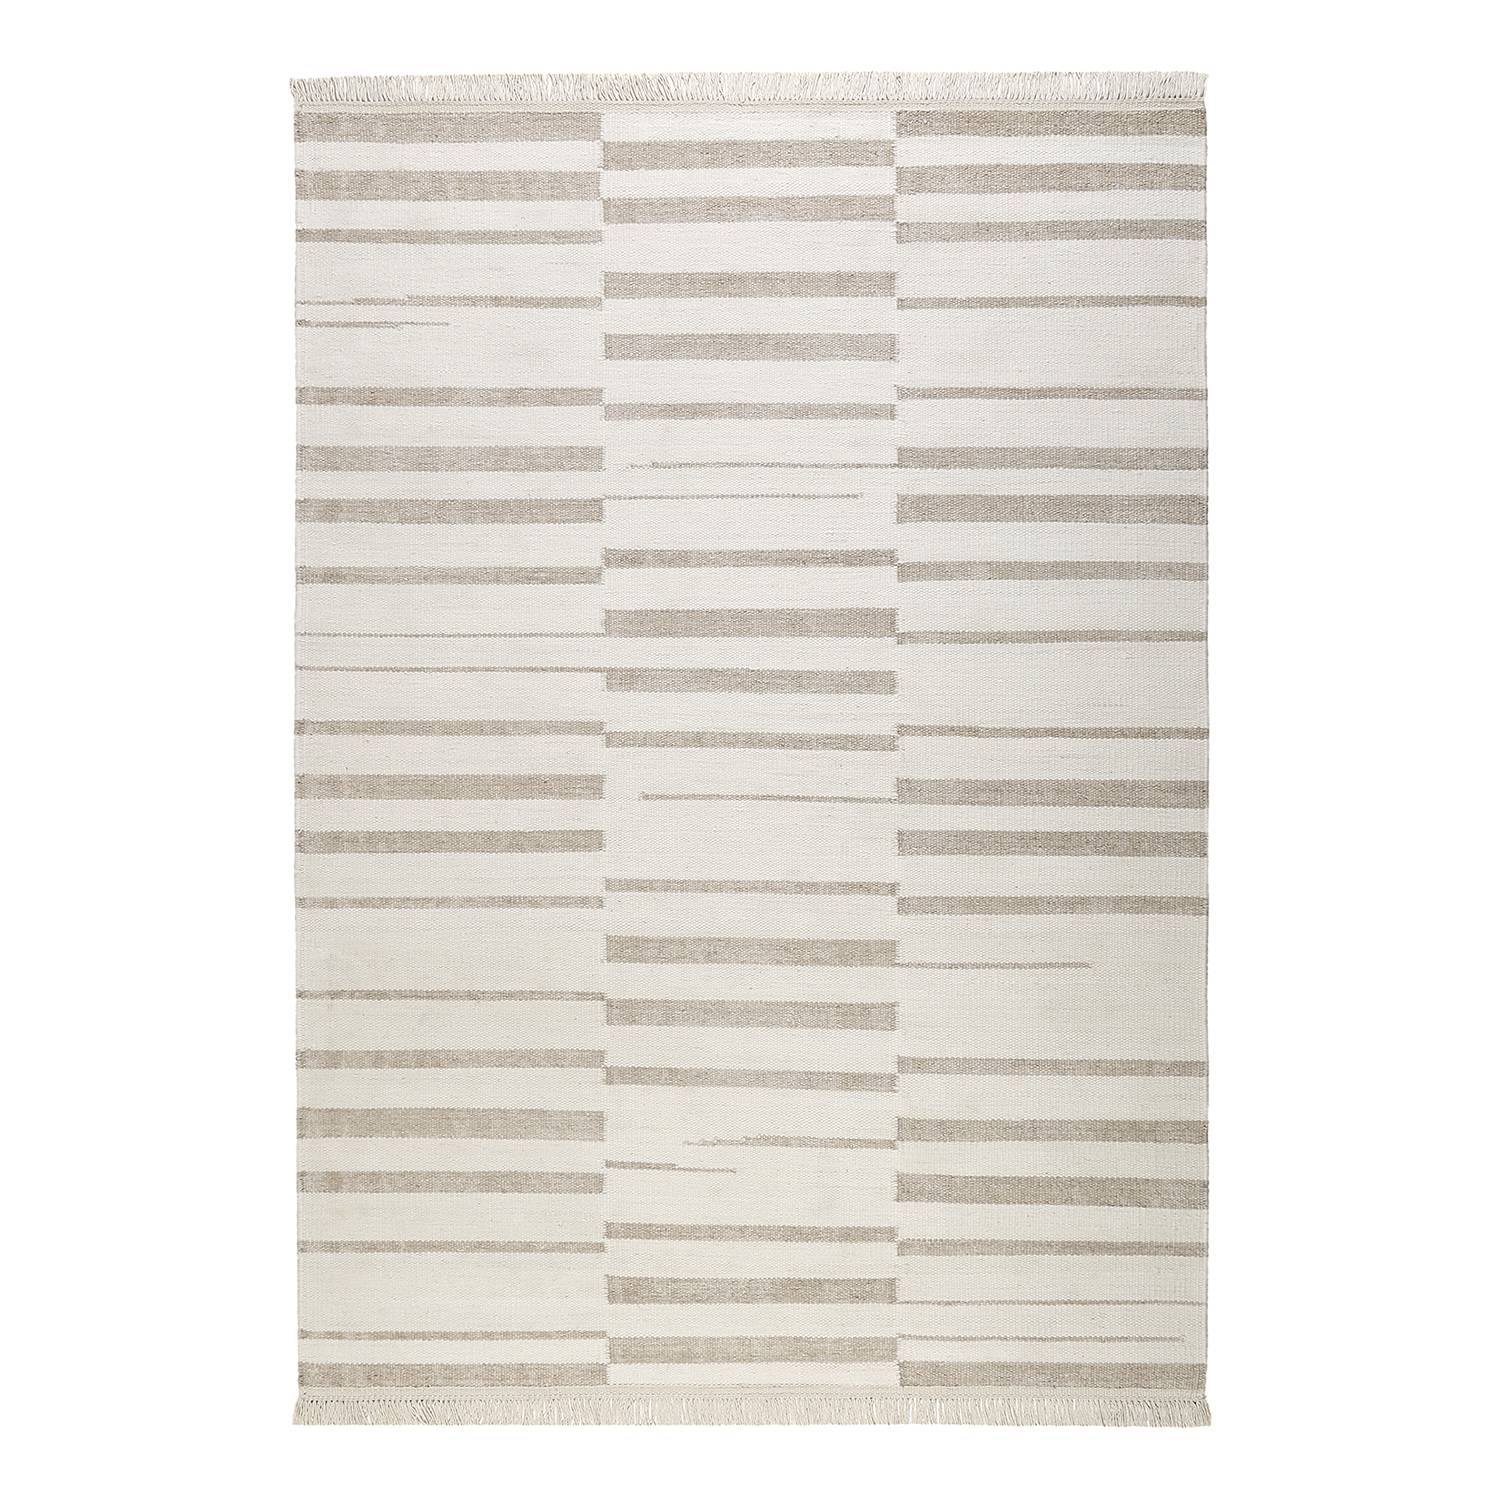 Teppich Skid Marks (handgewebt) - Mischgewebe - Creme / Beige - 160 x 230 cm, carpets&co